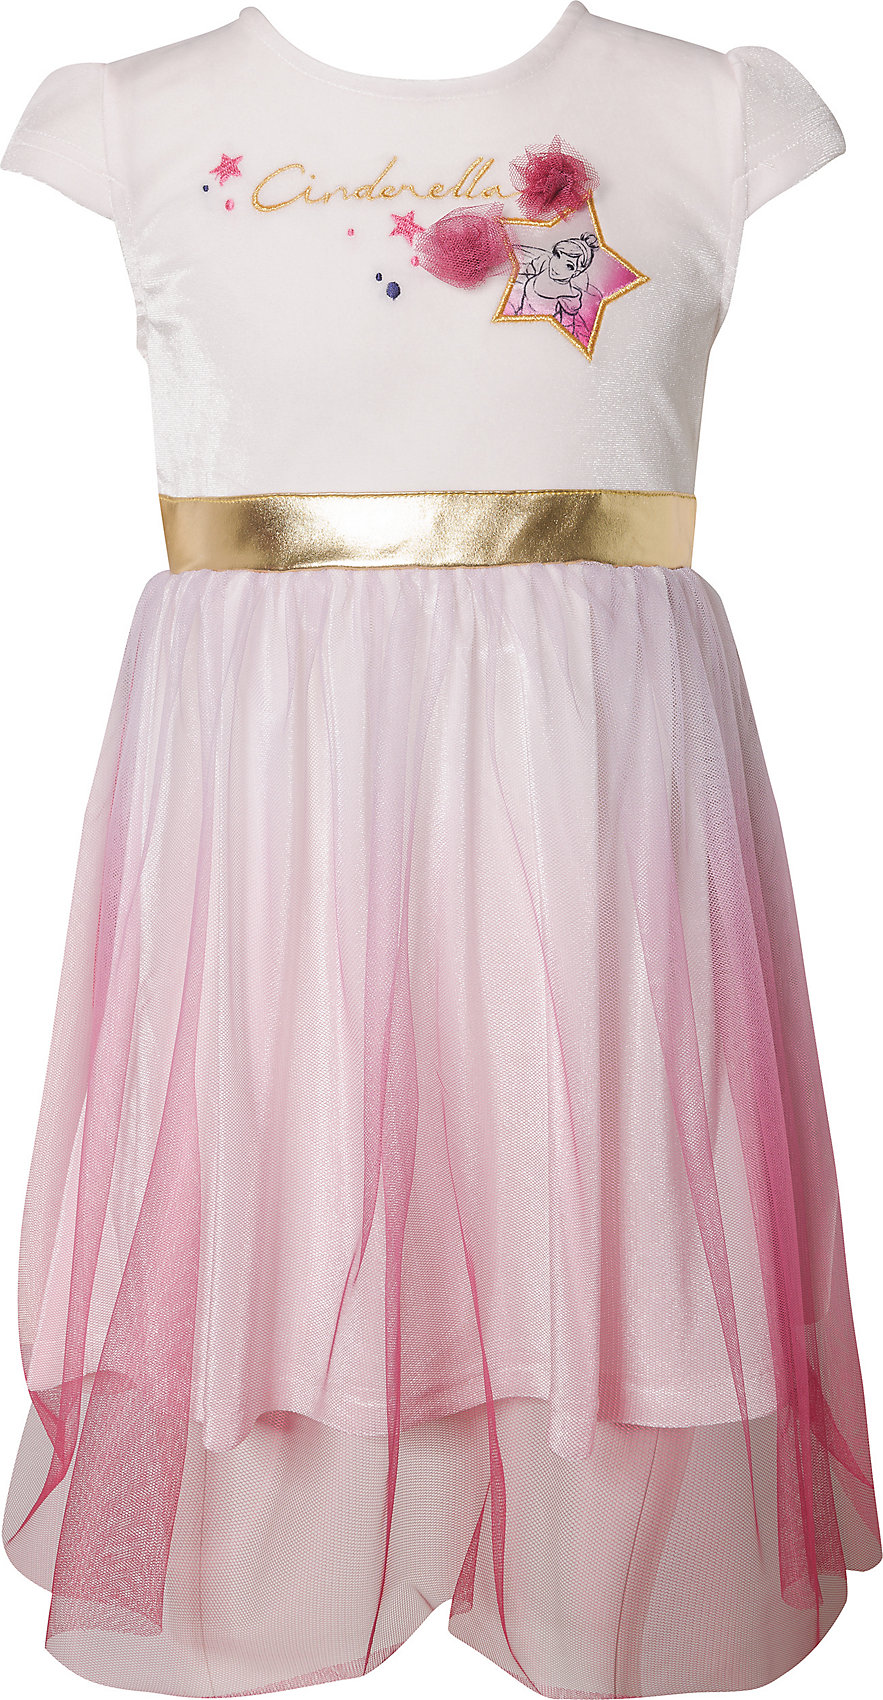 Neu Disney Princess Kinder Kleid 12159906 für Mädchen pink ...